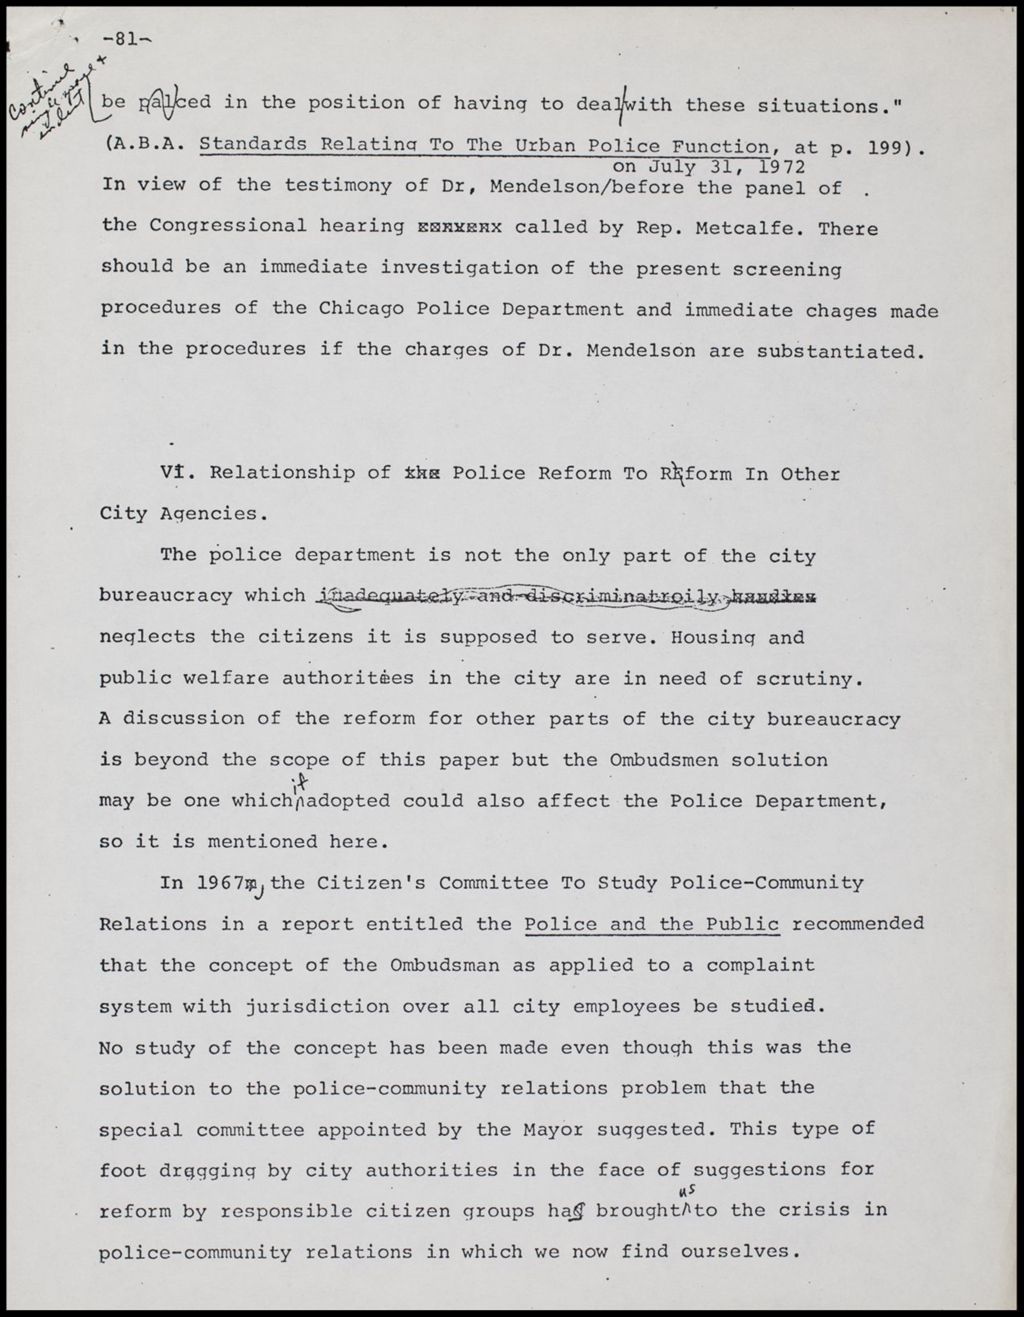 Concerned Citizens for Police Reform, 1972 (Folder II-2157)